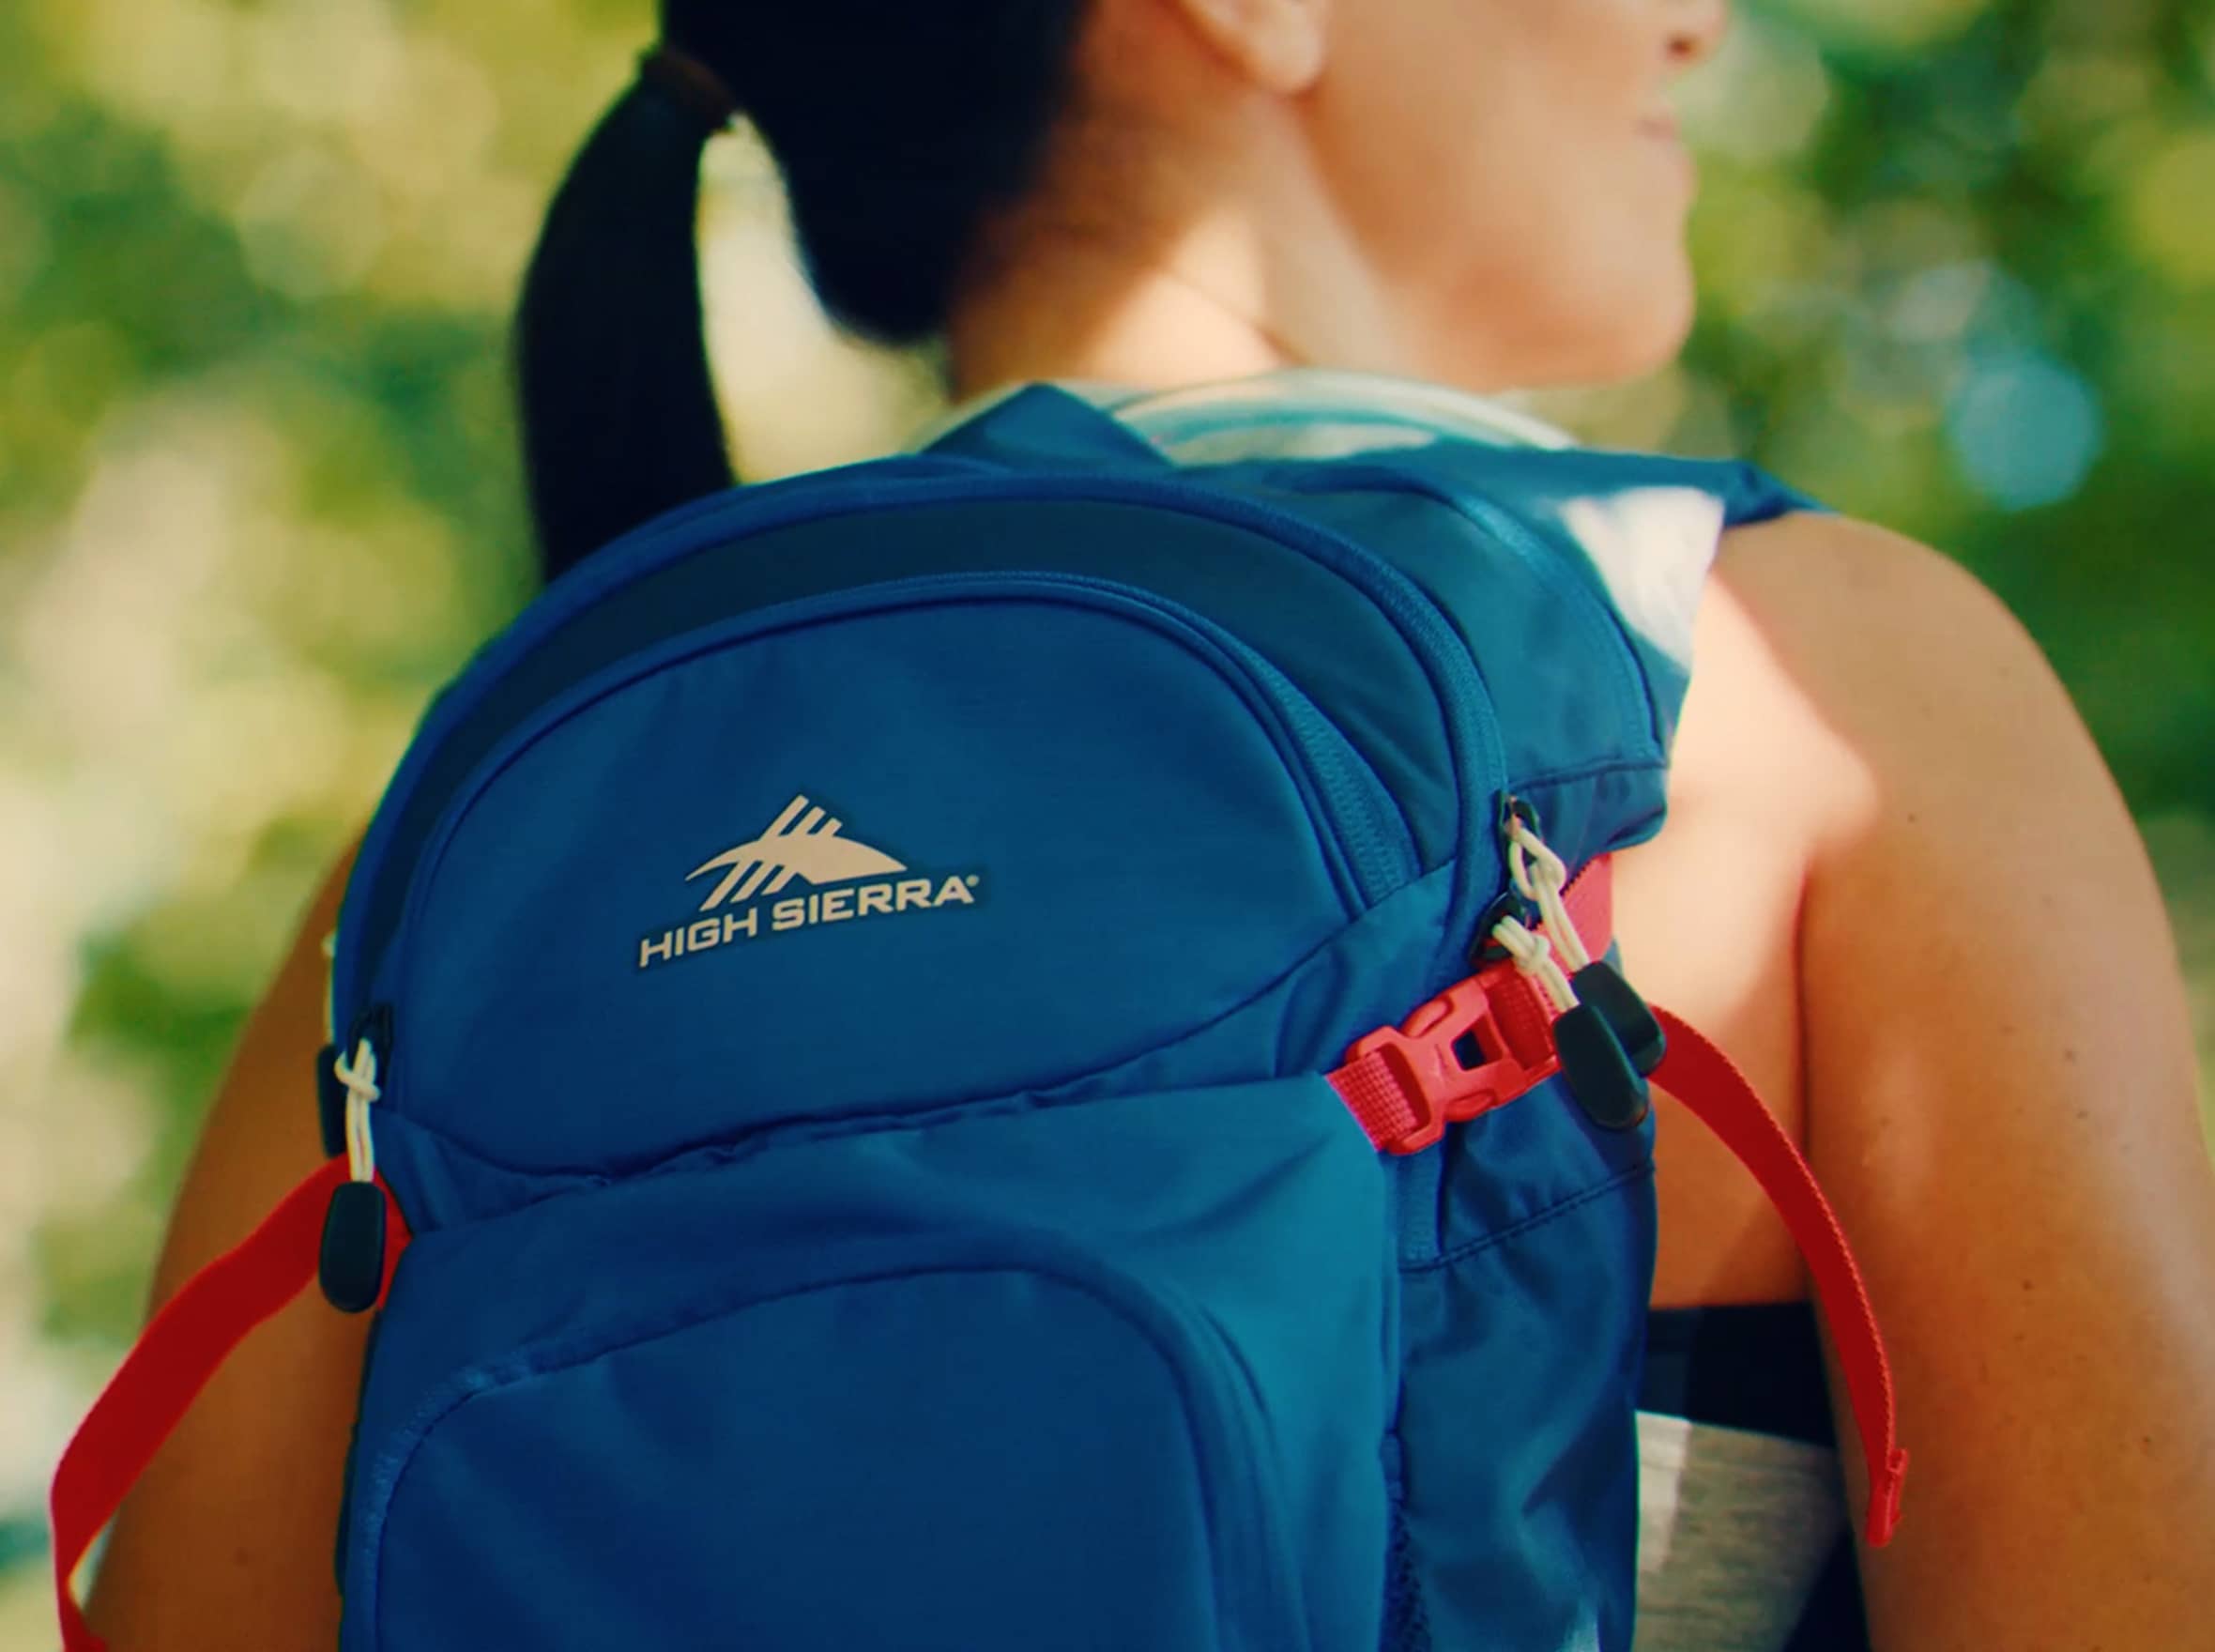 A girl wears a blue High Sierra backpack.